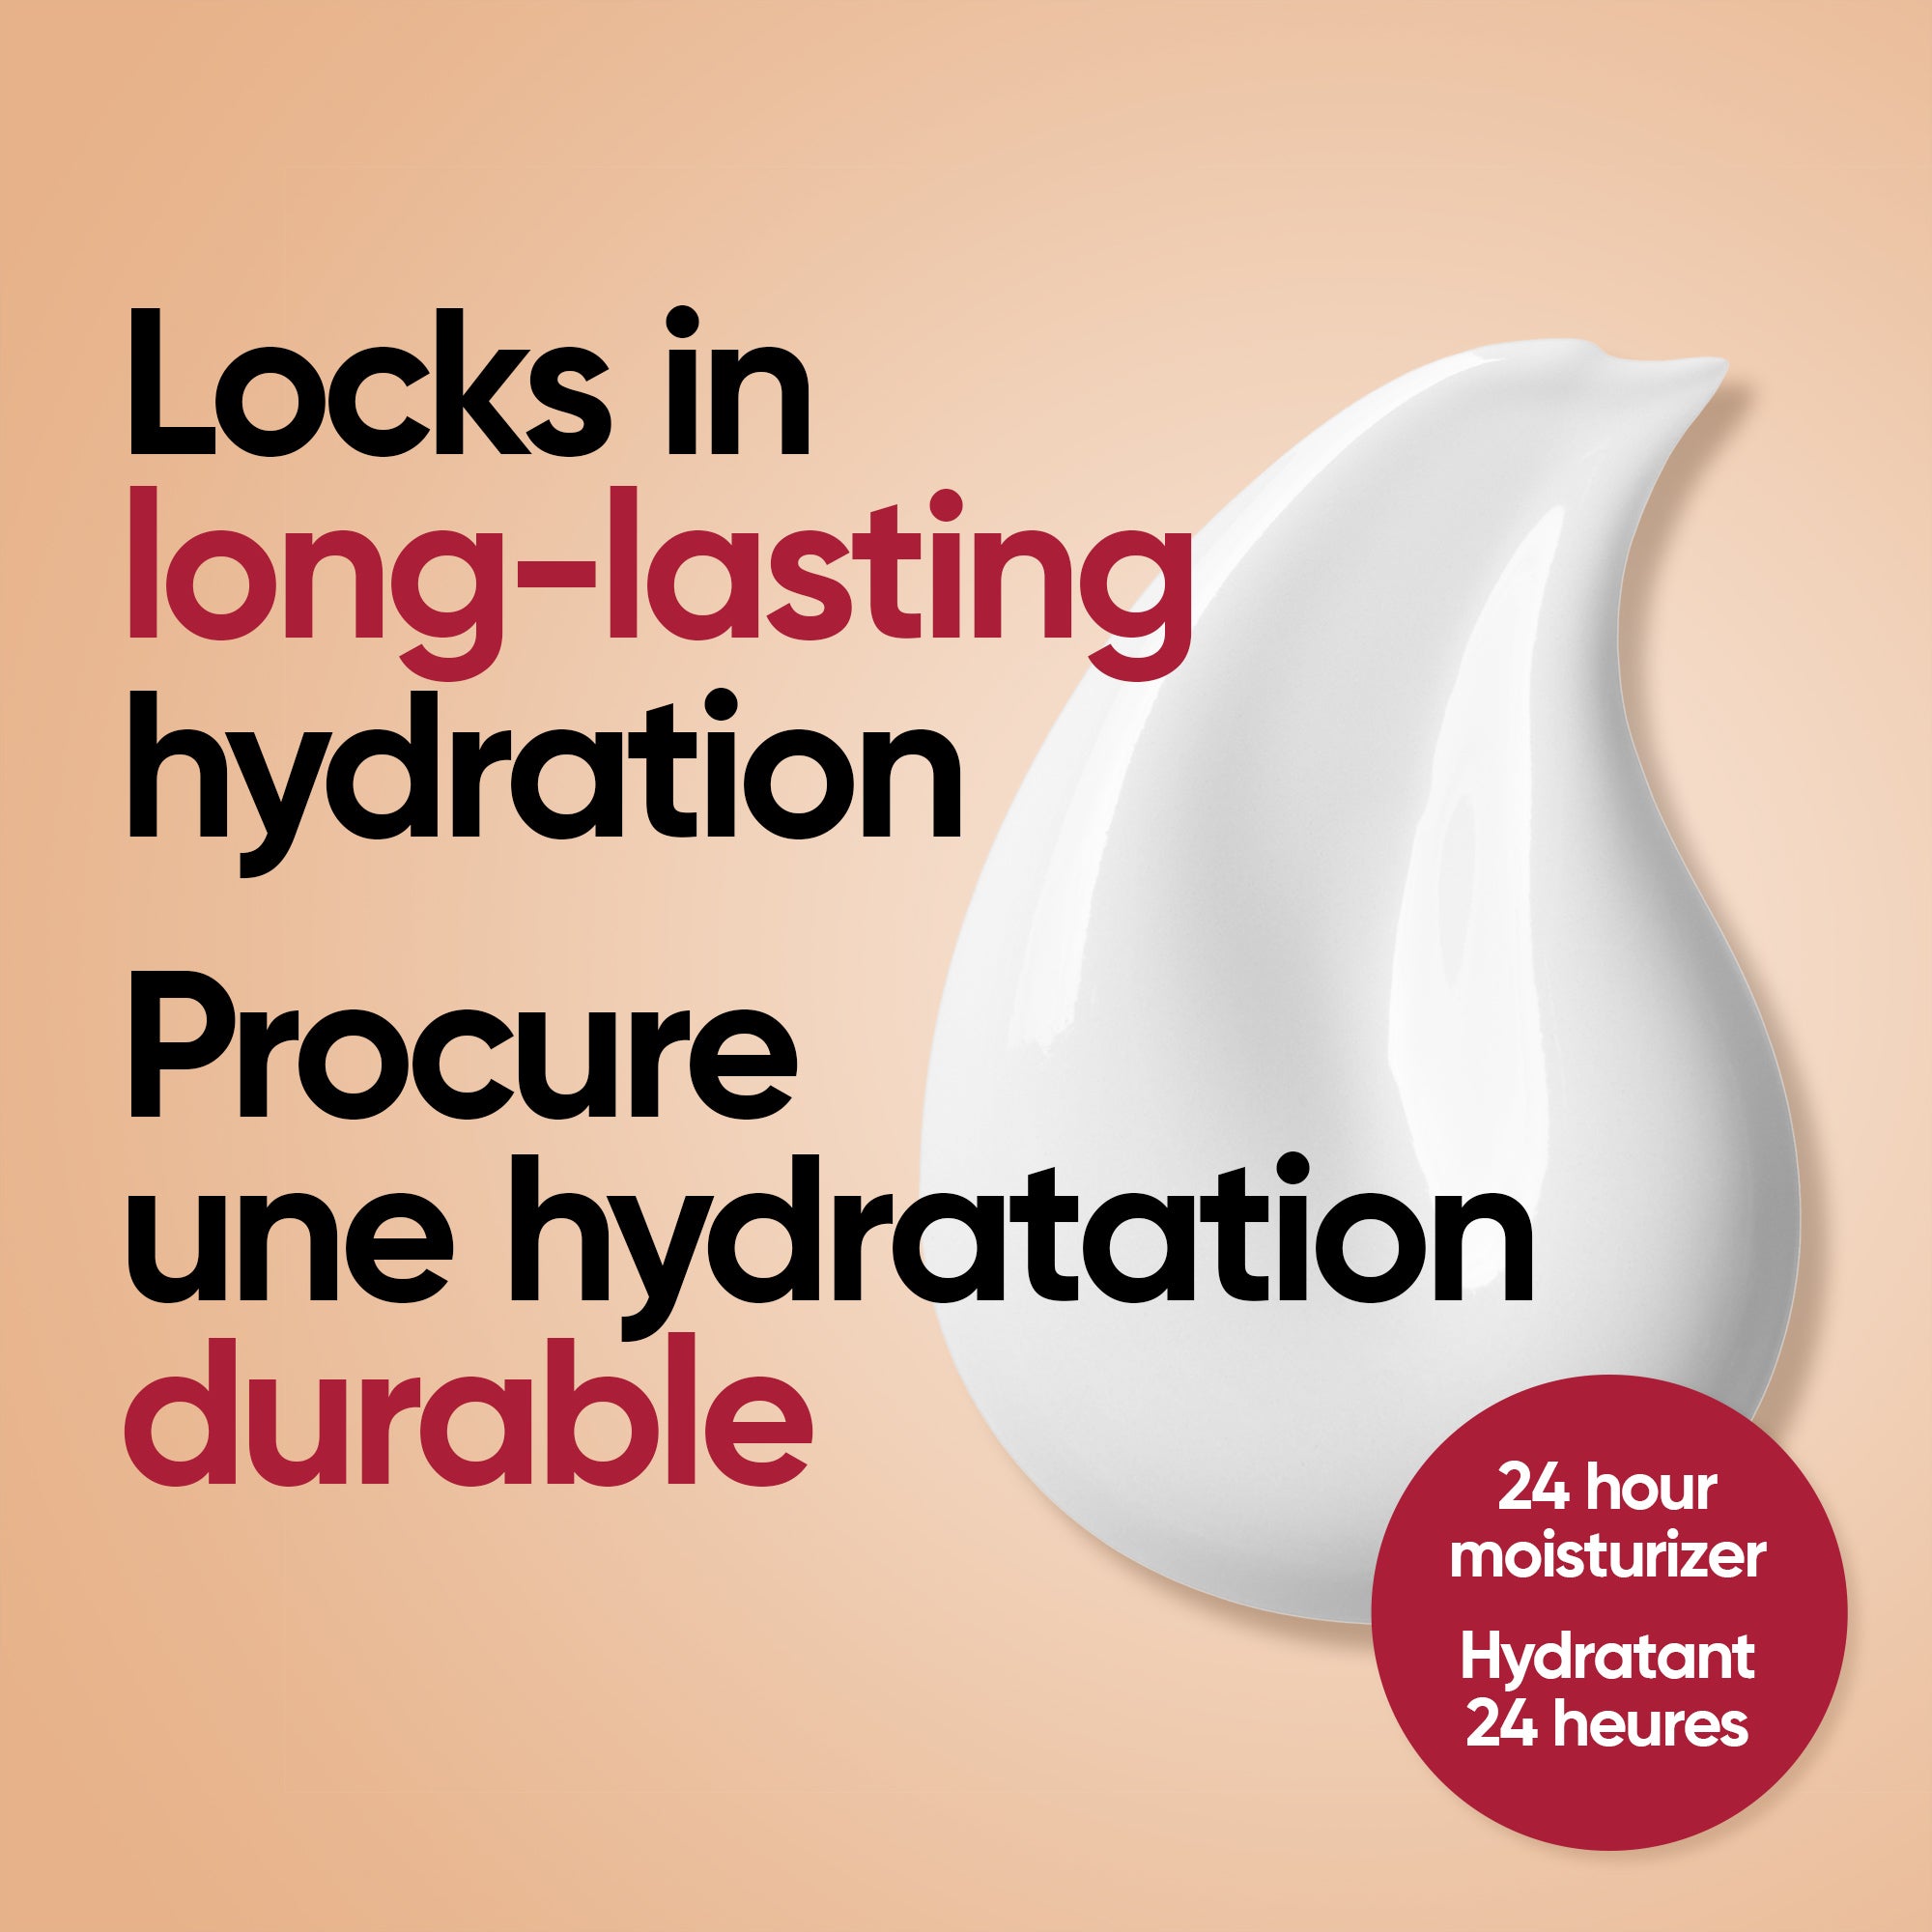 English: Locks in long-lasting hydration Français: Confère une hydratation longue durée